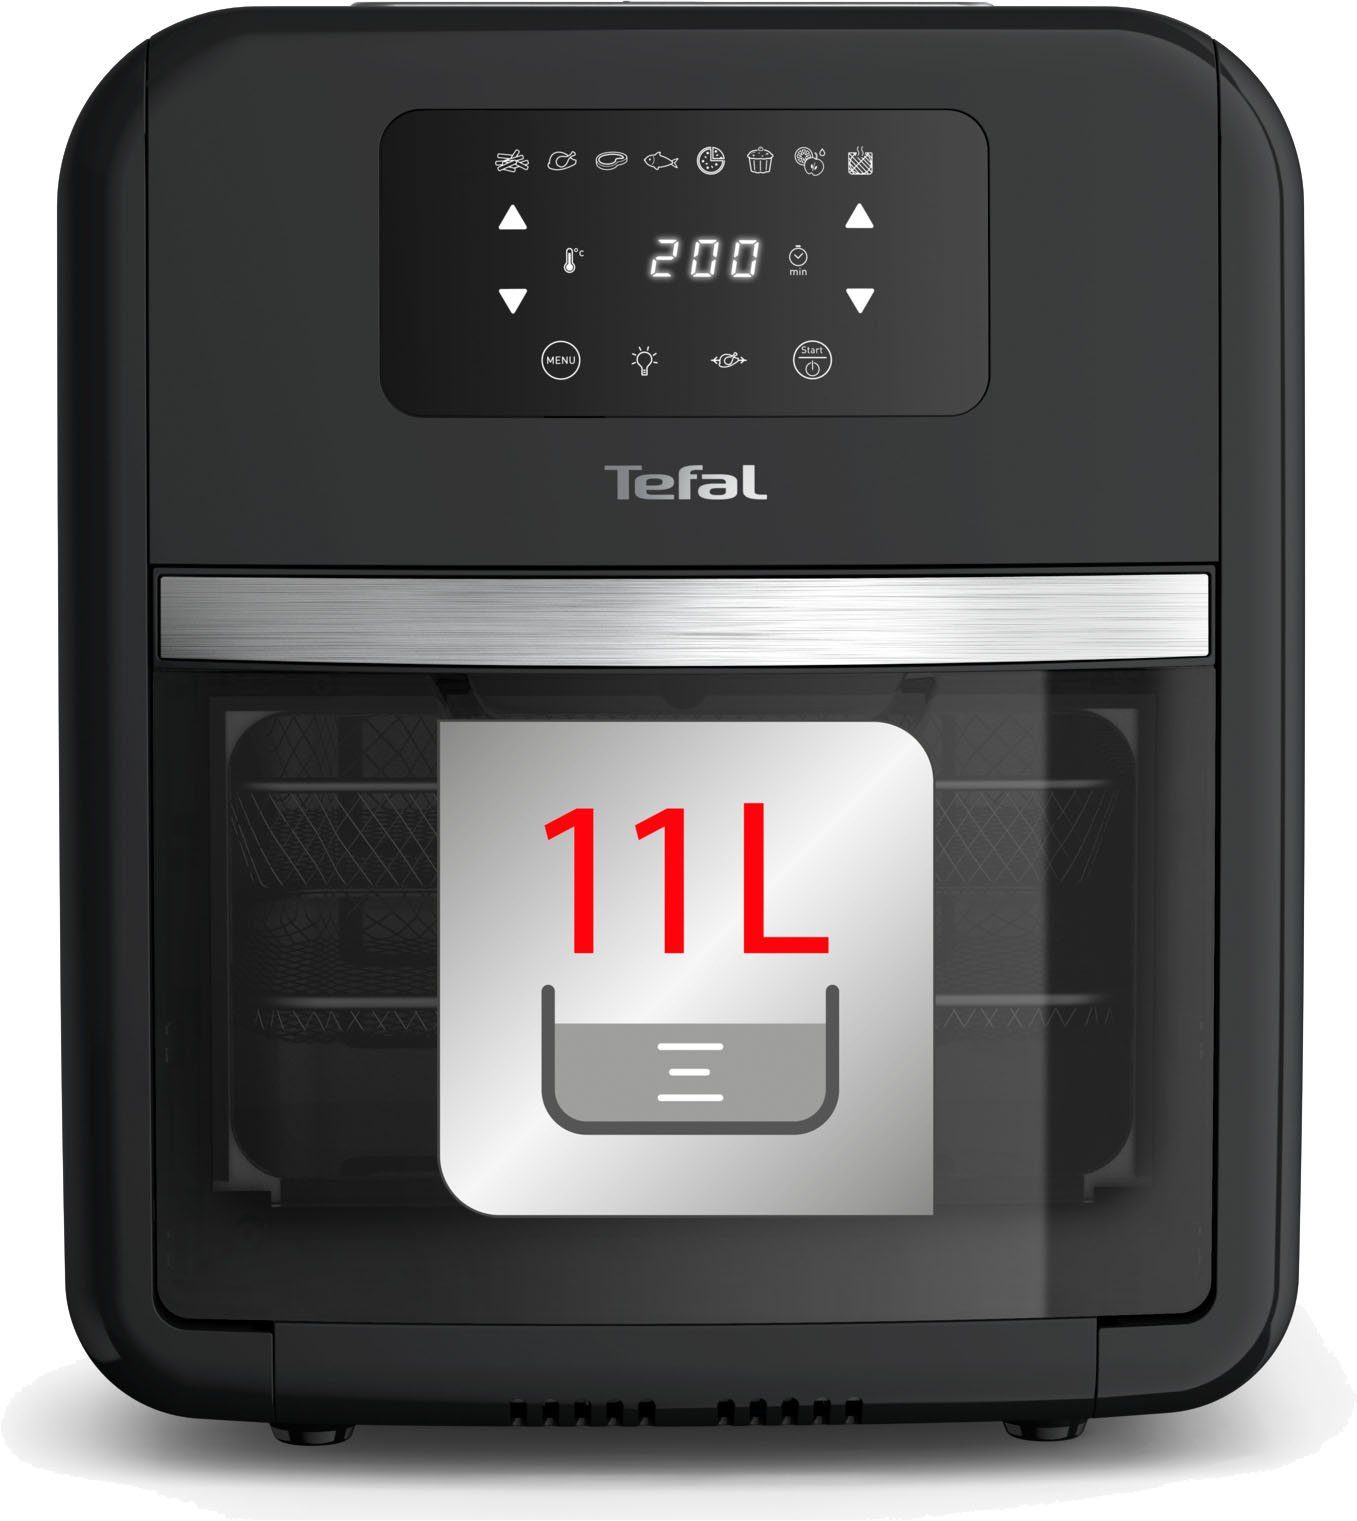 11 Fry 7 zu Temperaturkontrolle, einfach Timer W, Heißluftfritteuse Oven 2000 & Zubehörteile, Reinigen, FW5018 Grill, Tefal L, Easy